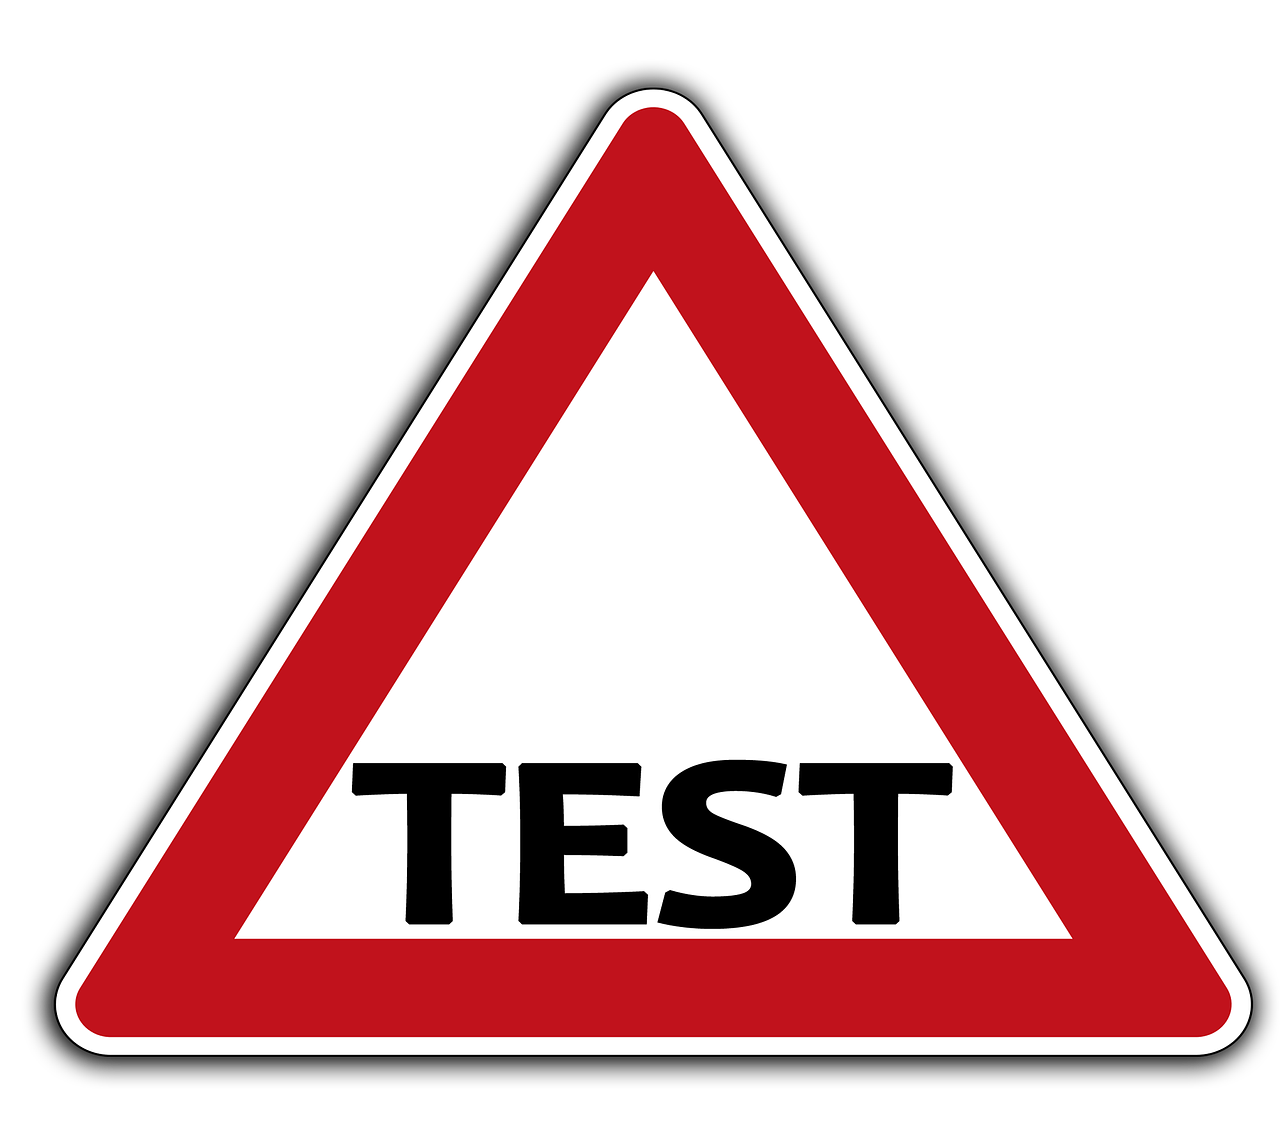 Frage des Tages: Können Unternehmen Tests ihrer Produkte verhindern?